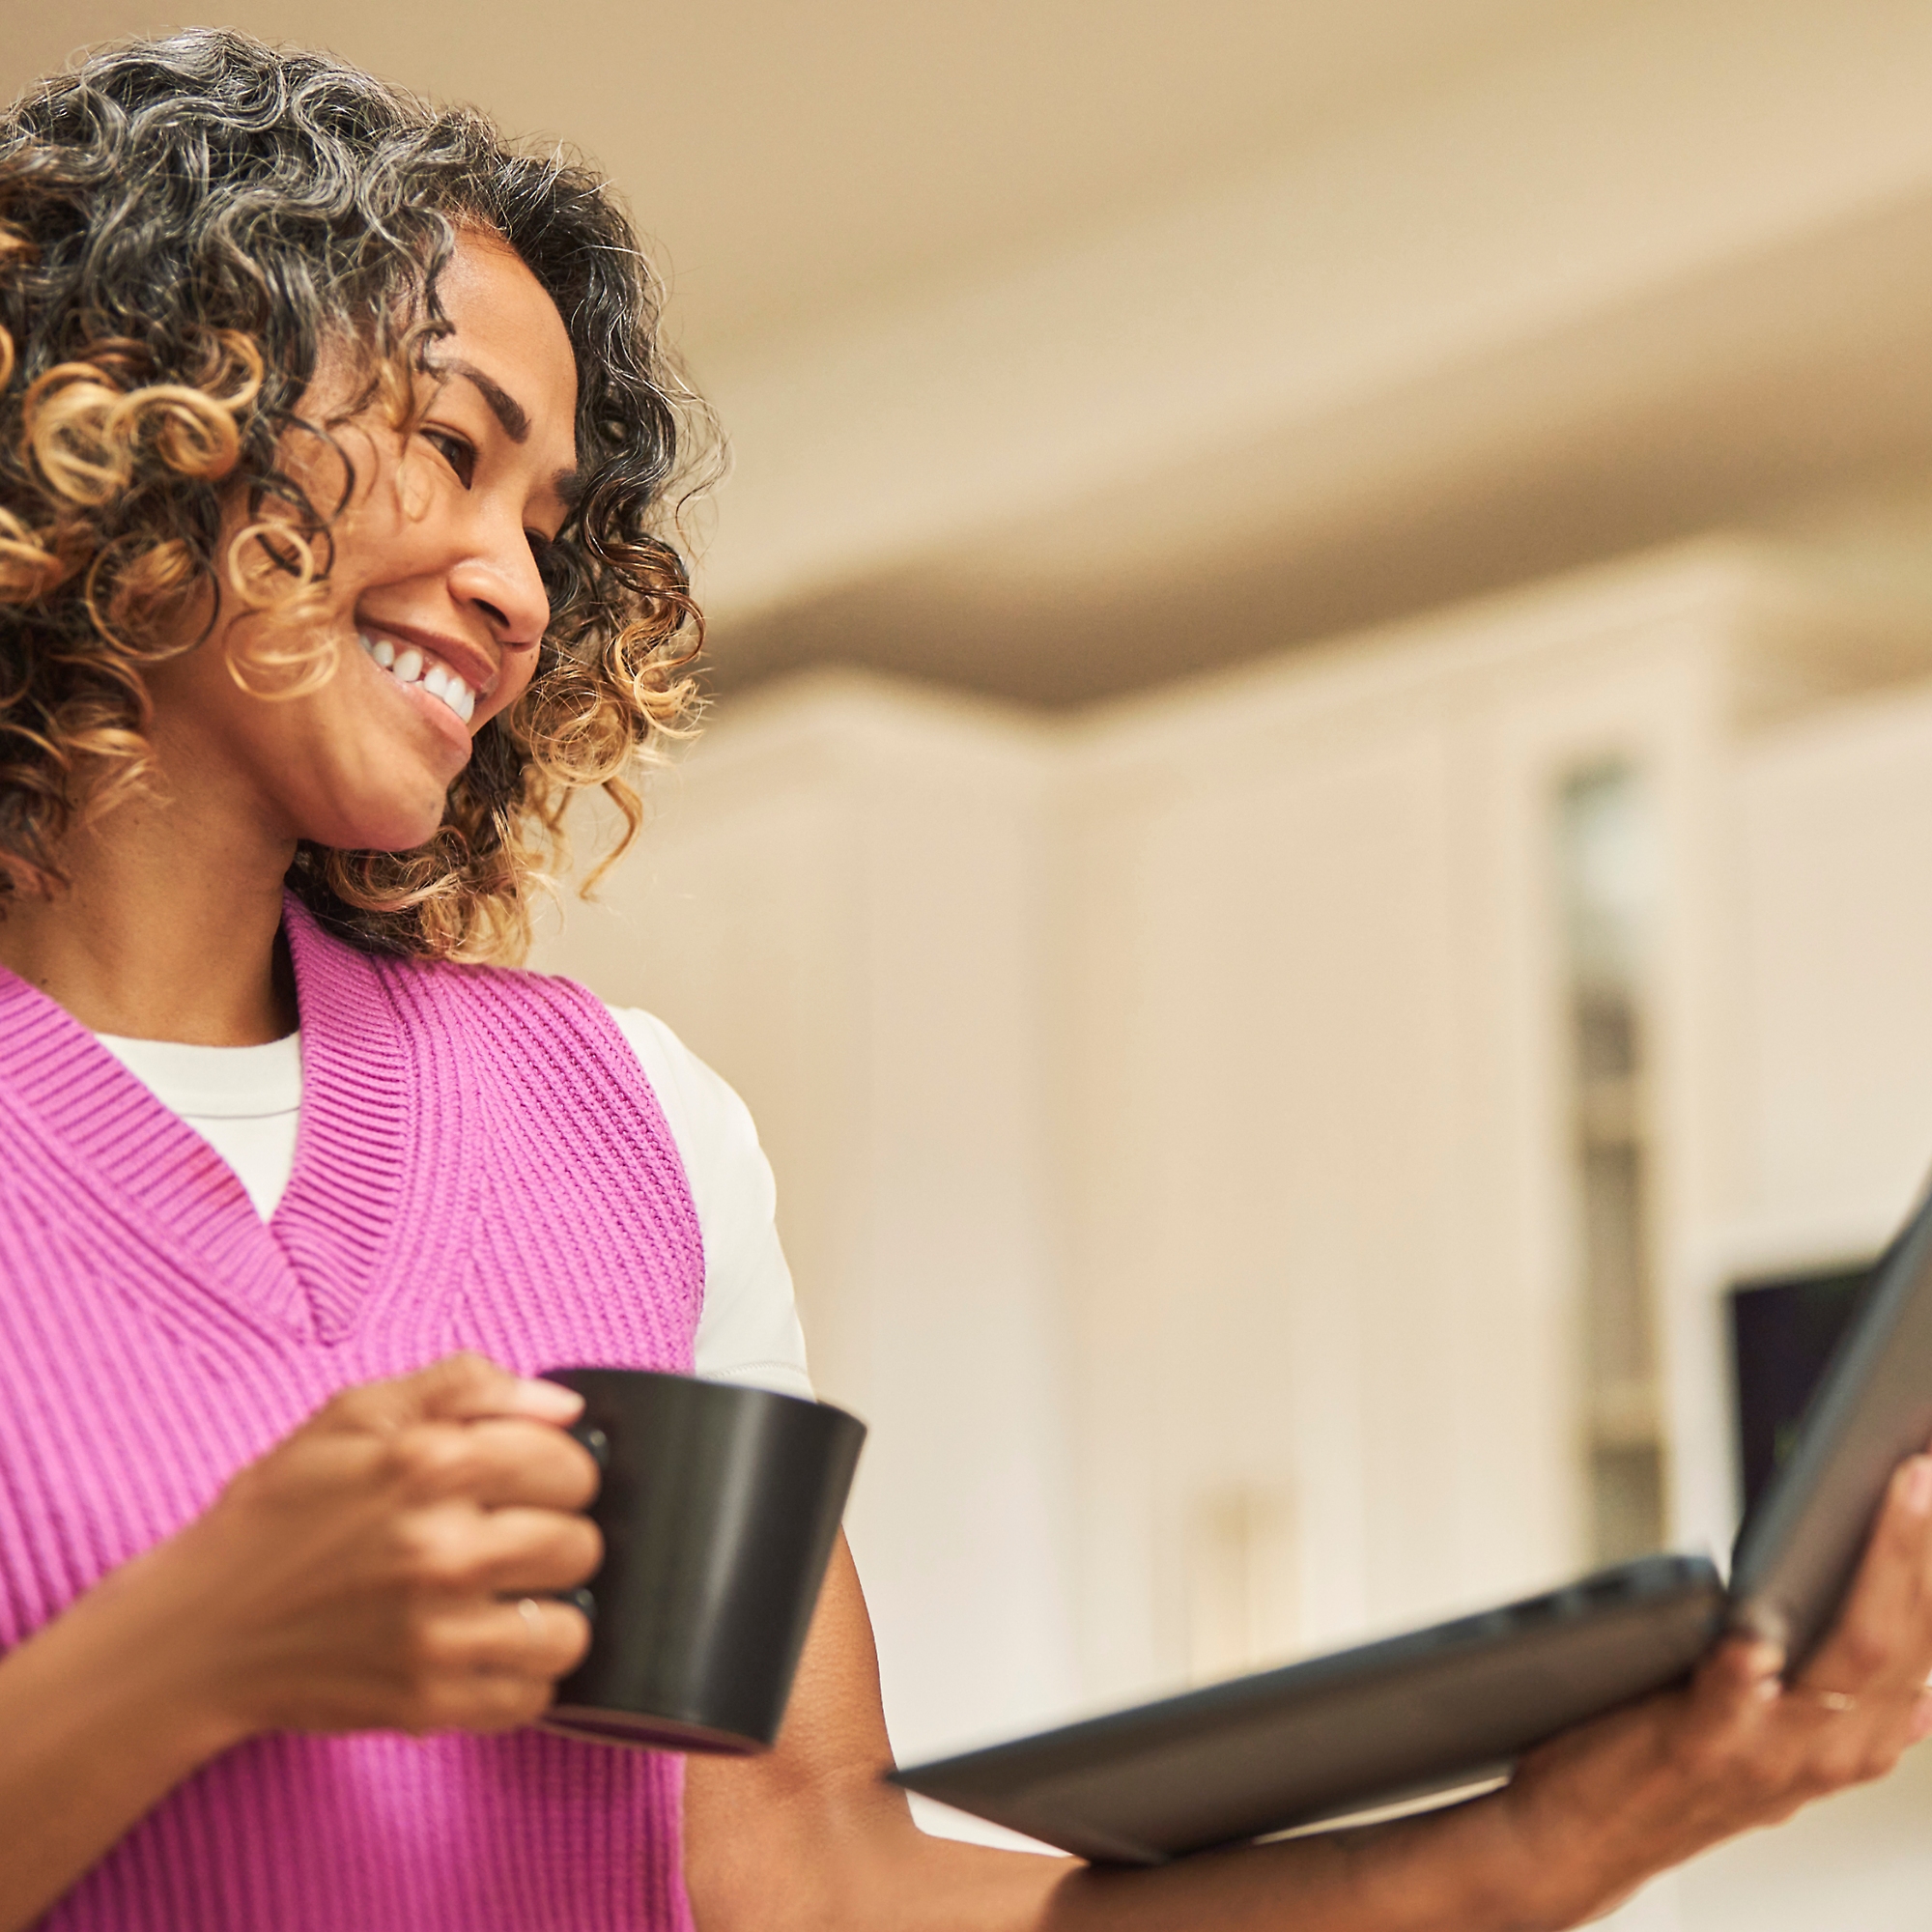 Žena koja se smeje sa šoljicom za kafu u jednoj ruci i laptopom u drugoj